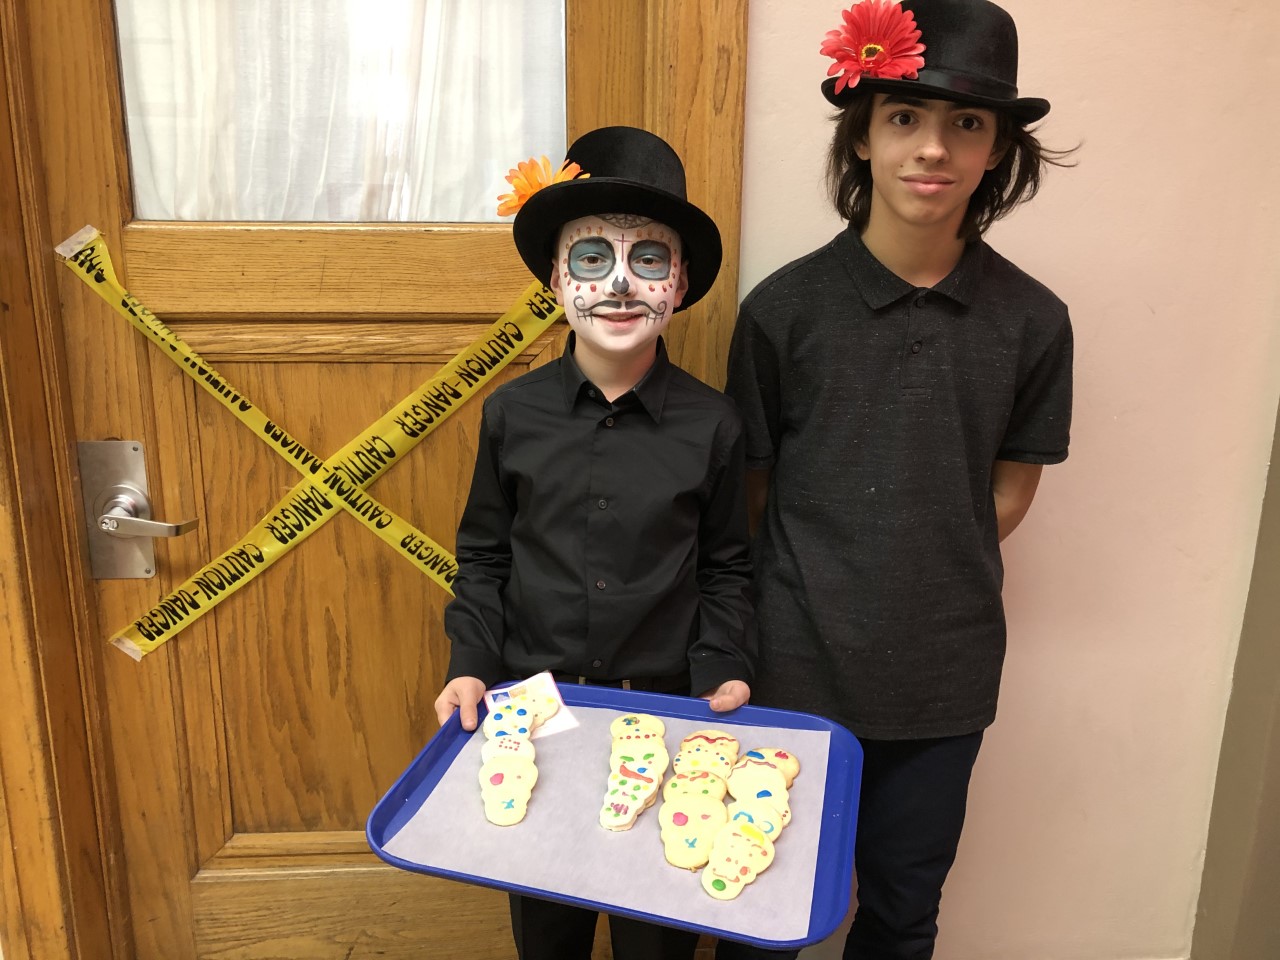 Des élèves ont décoré et distribué des biscuits en forme de tête de mort à leurs camarades